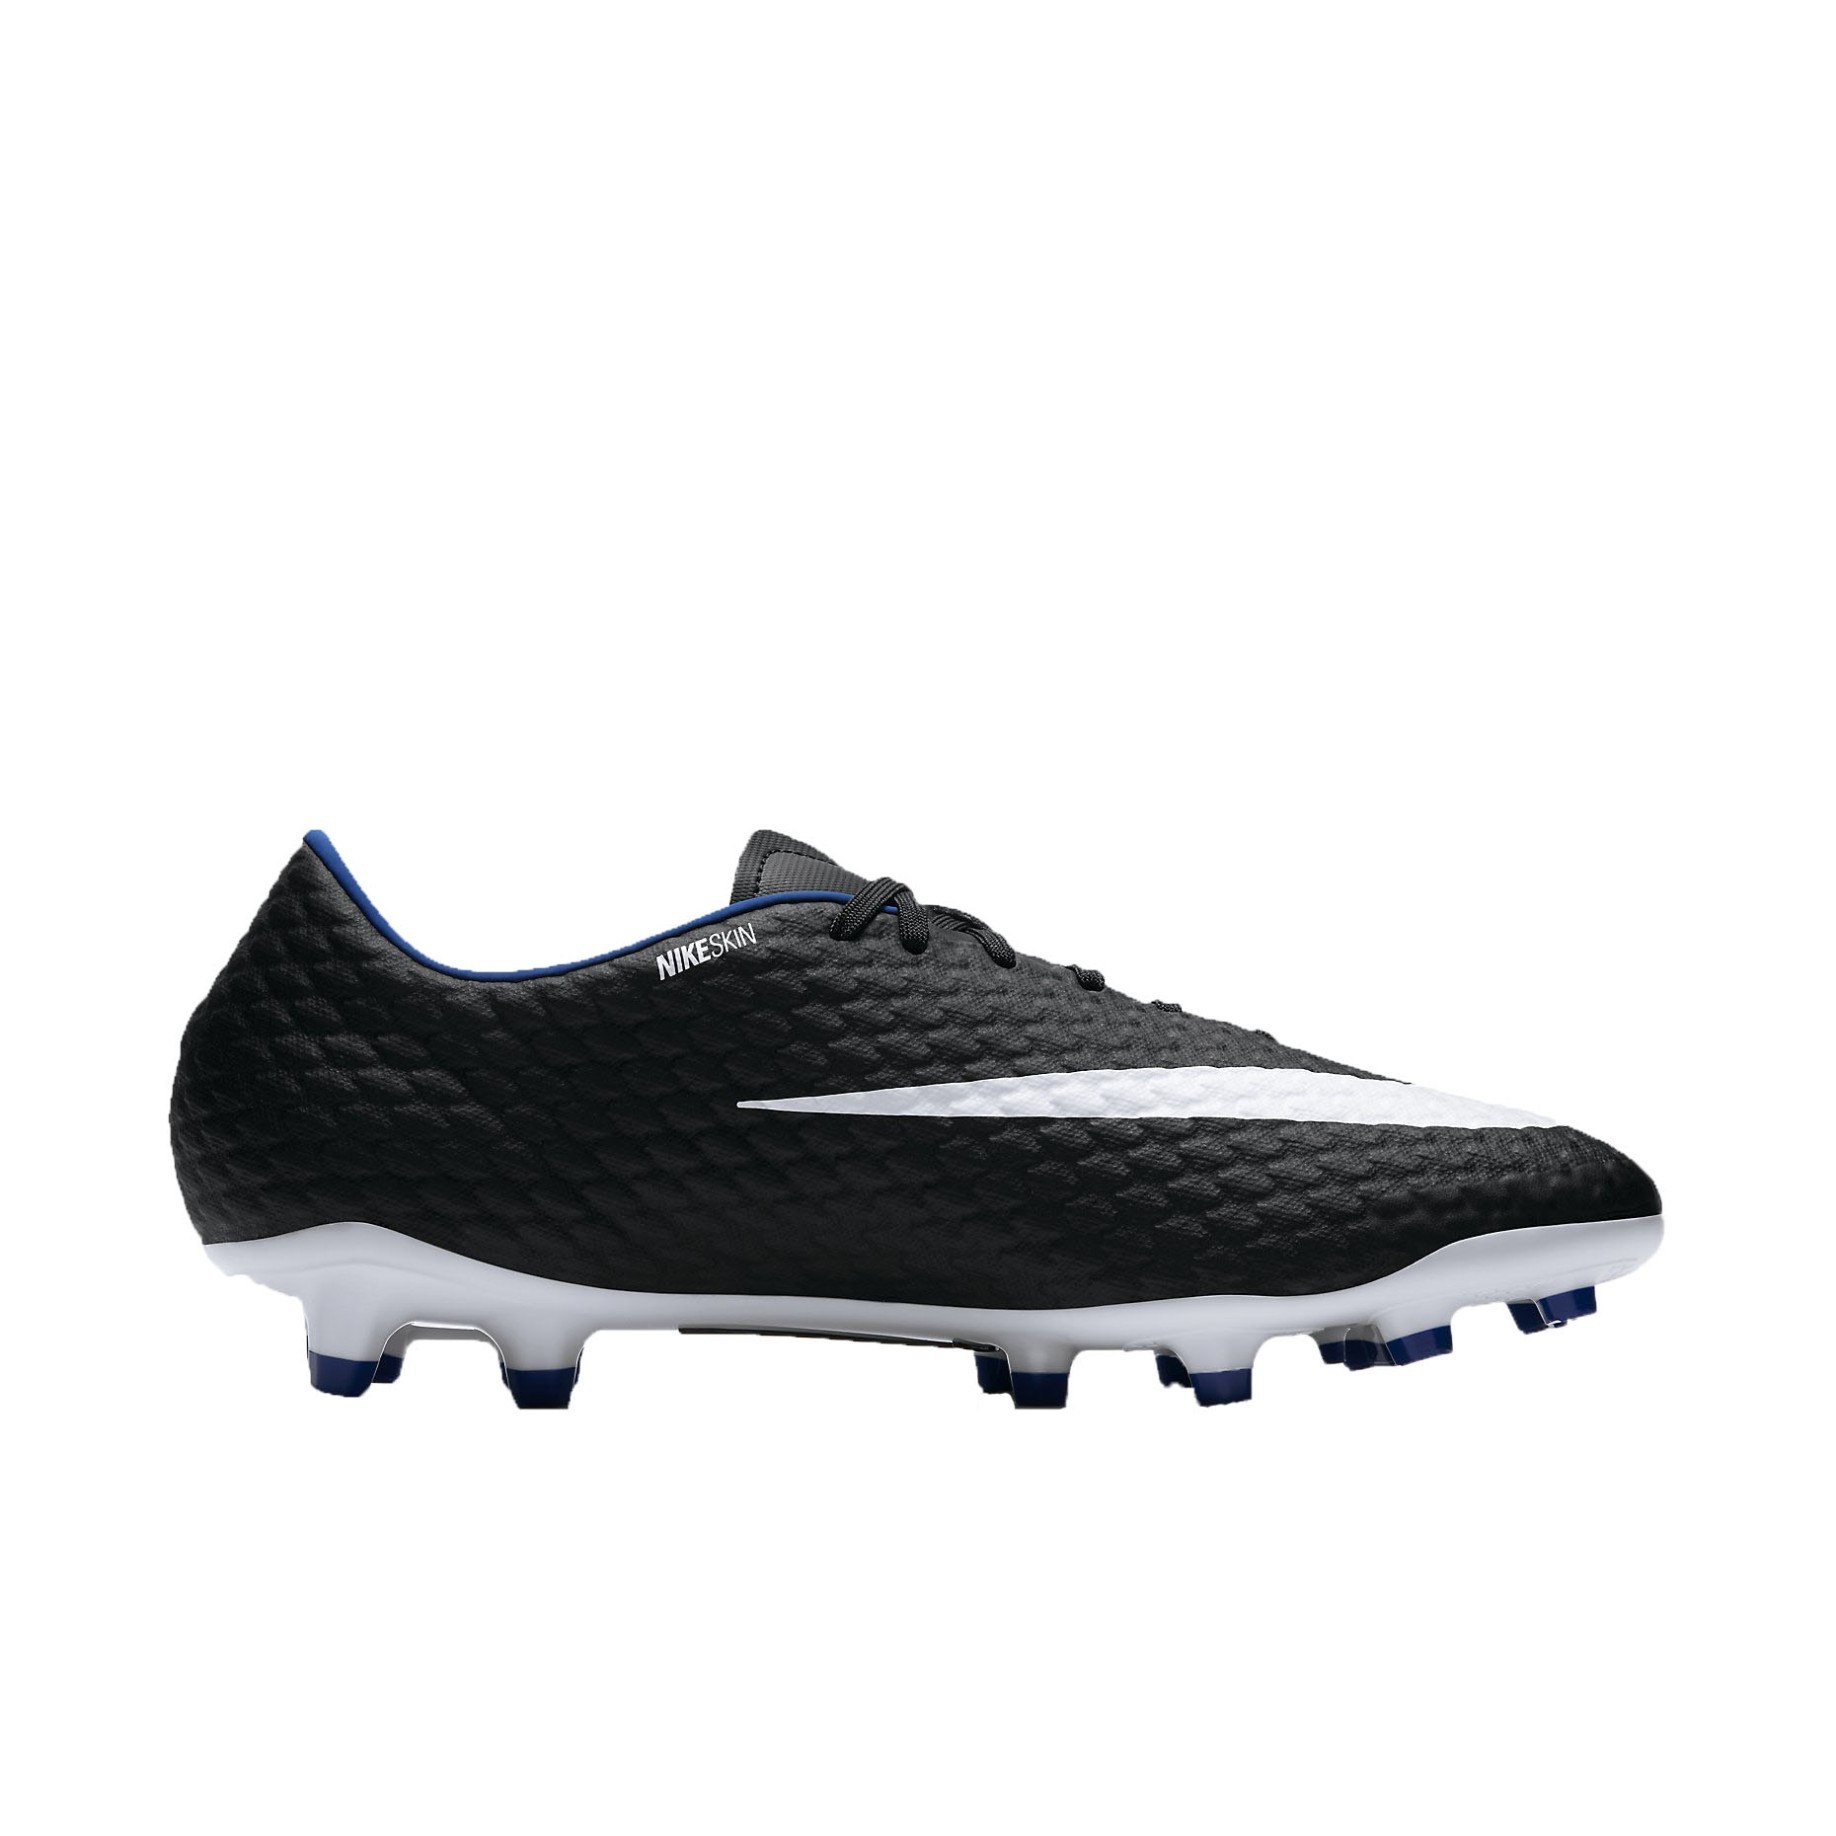 Zapatos de fútbol Nike Hypervenom Phelon FG colore negro - - SportIT.com